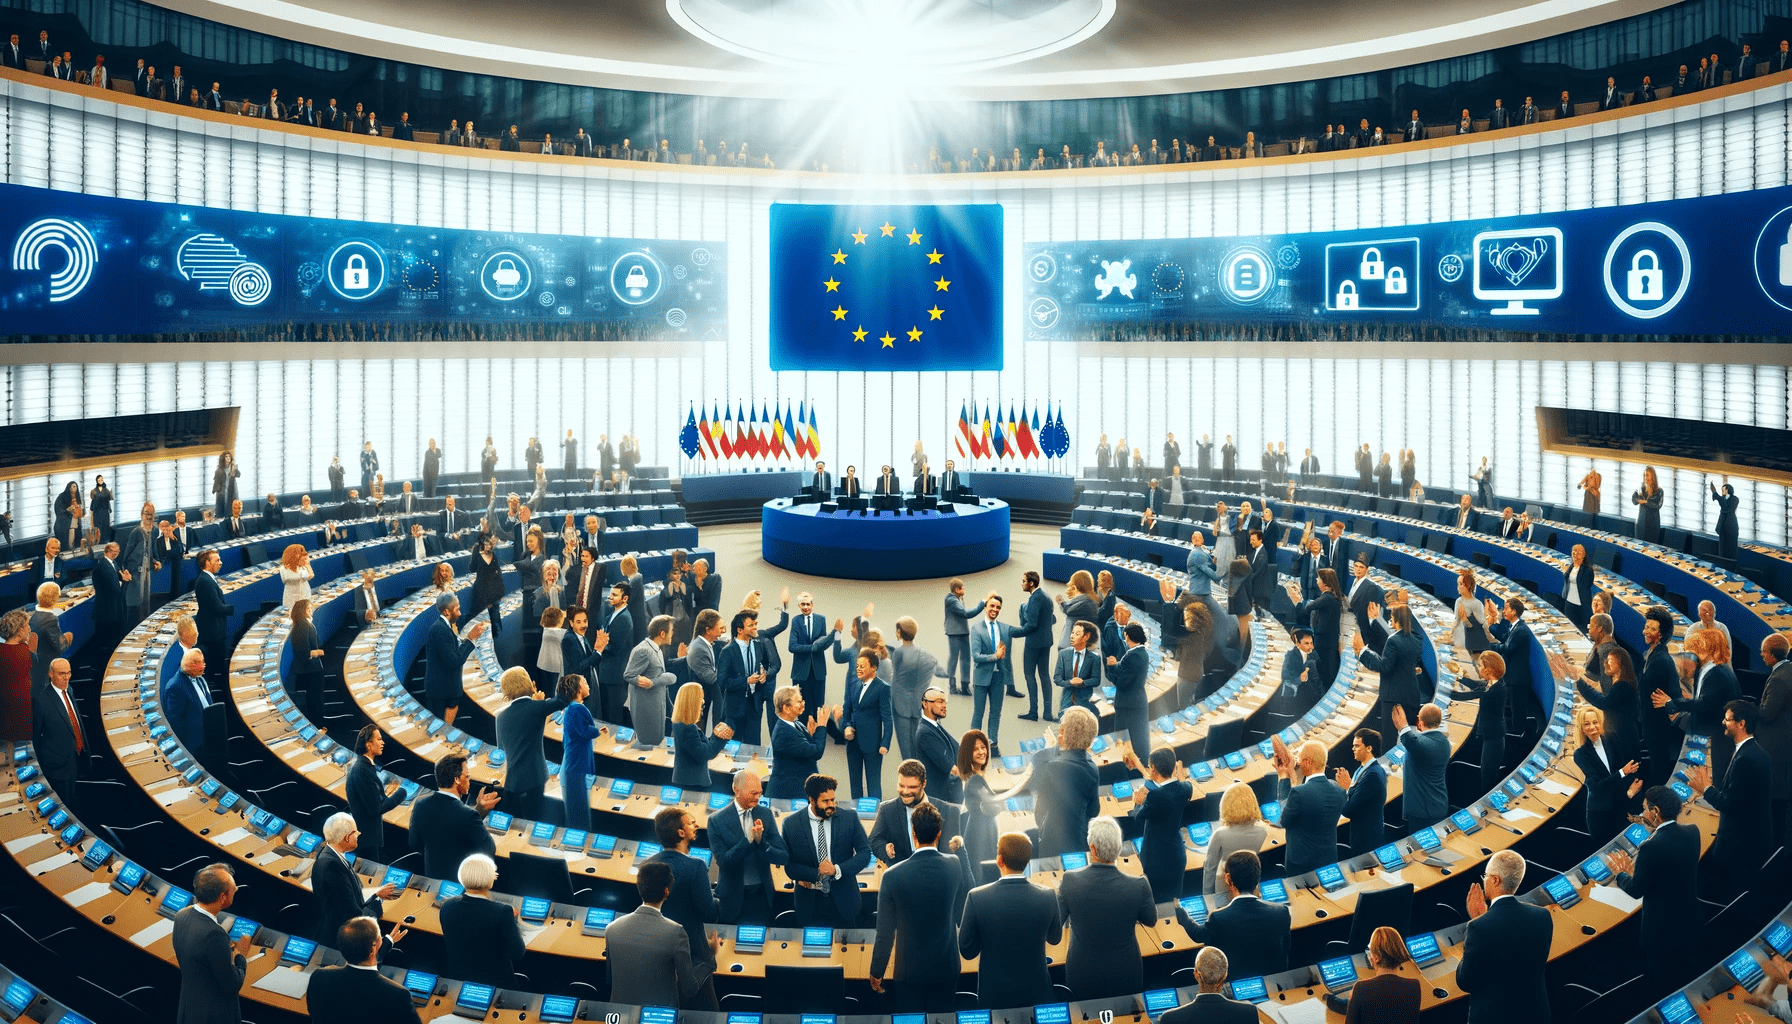 Optimistiske EU-parlamentarikere feirer suksessfull avstemning om Chatcontrol, i en lys og moderne parlamentssal, med symboler på sikker kommunikasjon.